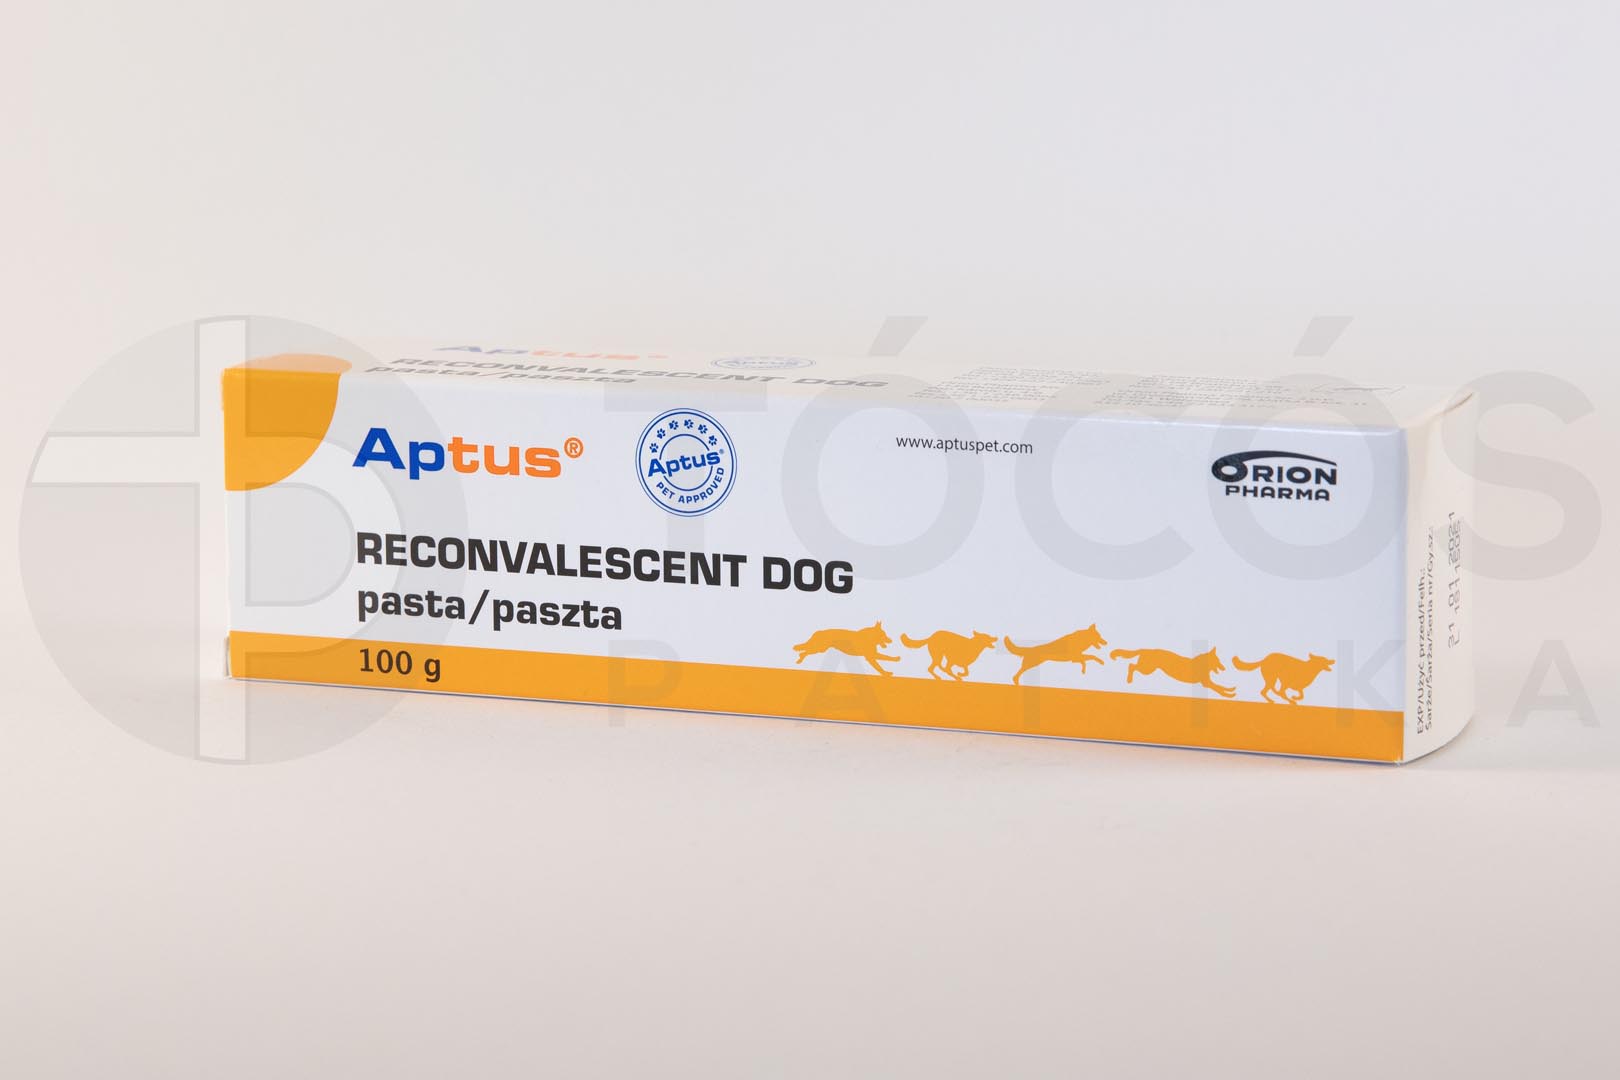 Aptus Reconvalescent paszta Dog a.u.v. 100g